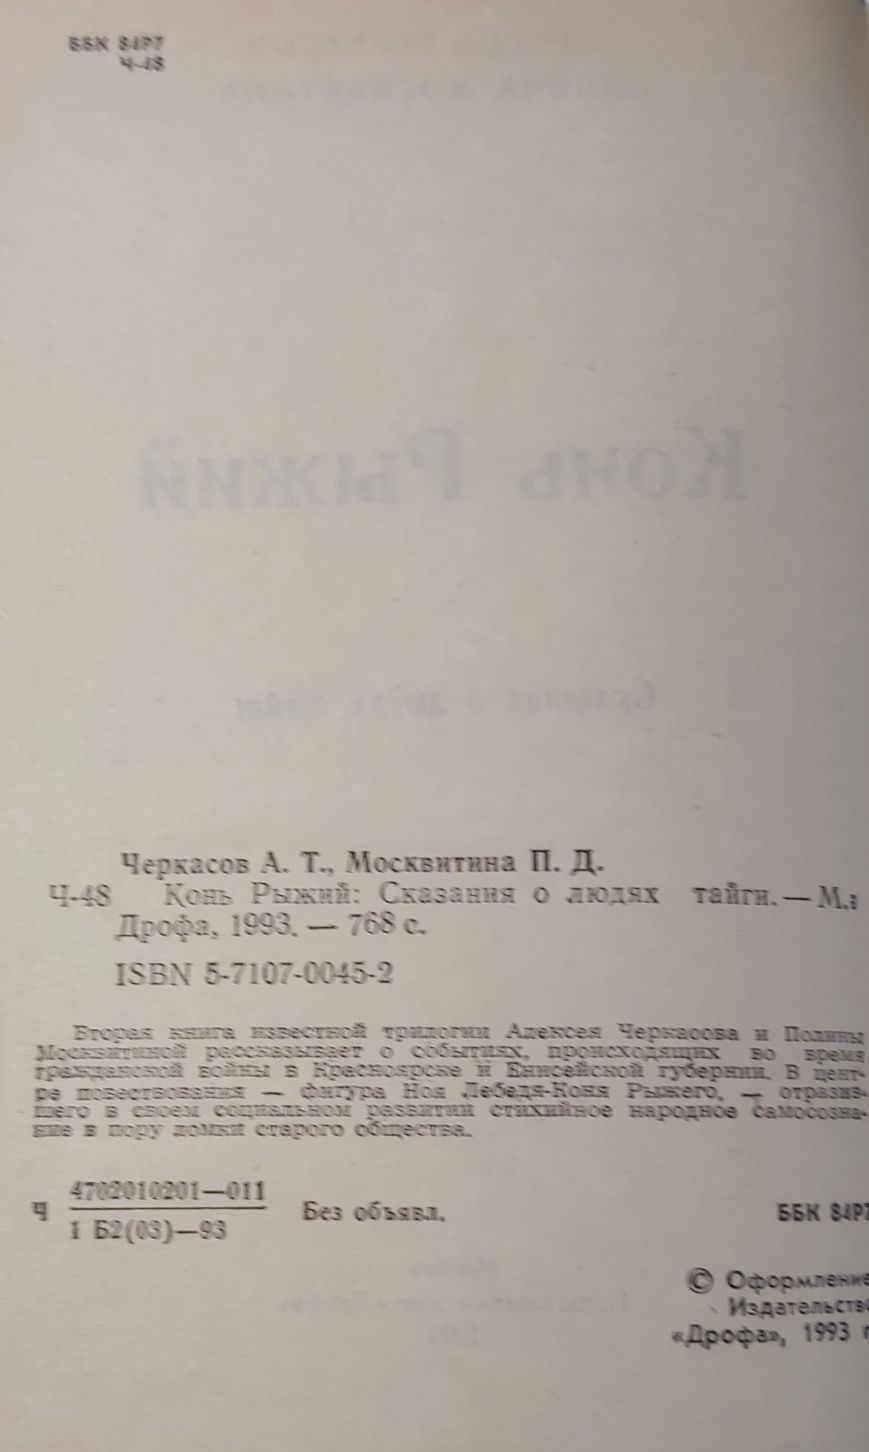 Черкасов, Москвитина    Конь рыжий  1993 год изд.